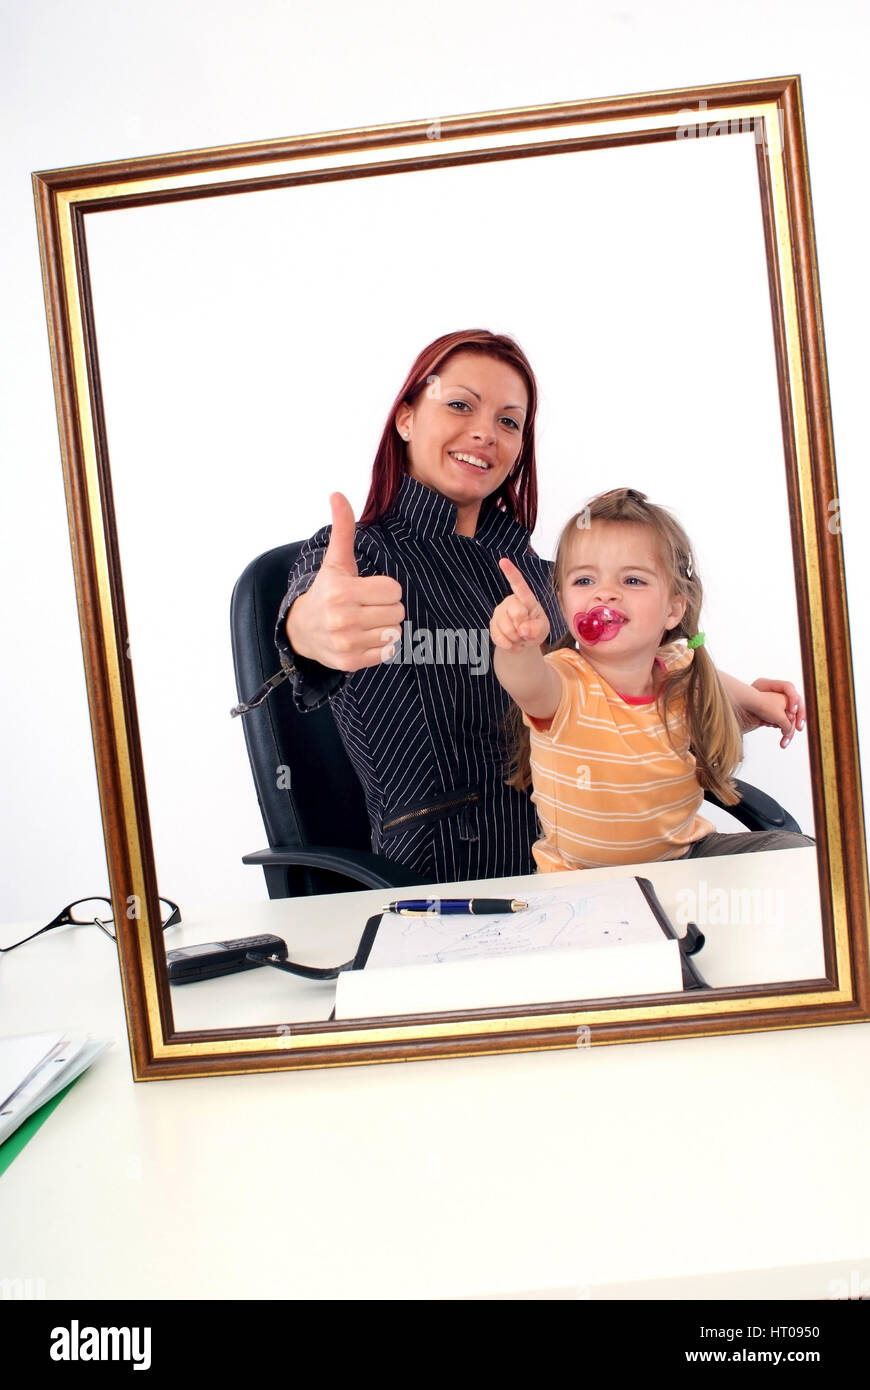 Symbolbild Karrierefrau und Mutter, erfolgreiche Geschaeftsfrau mit Tochter am Schreibtisch - sucessful businesswoman with daughter Stock Photo